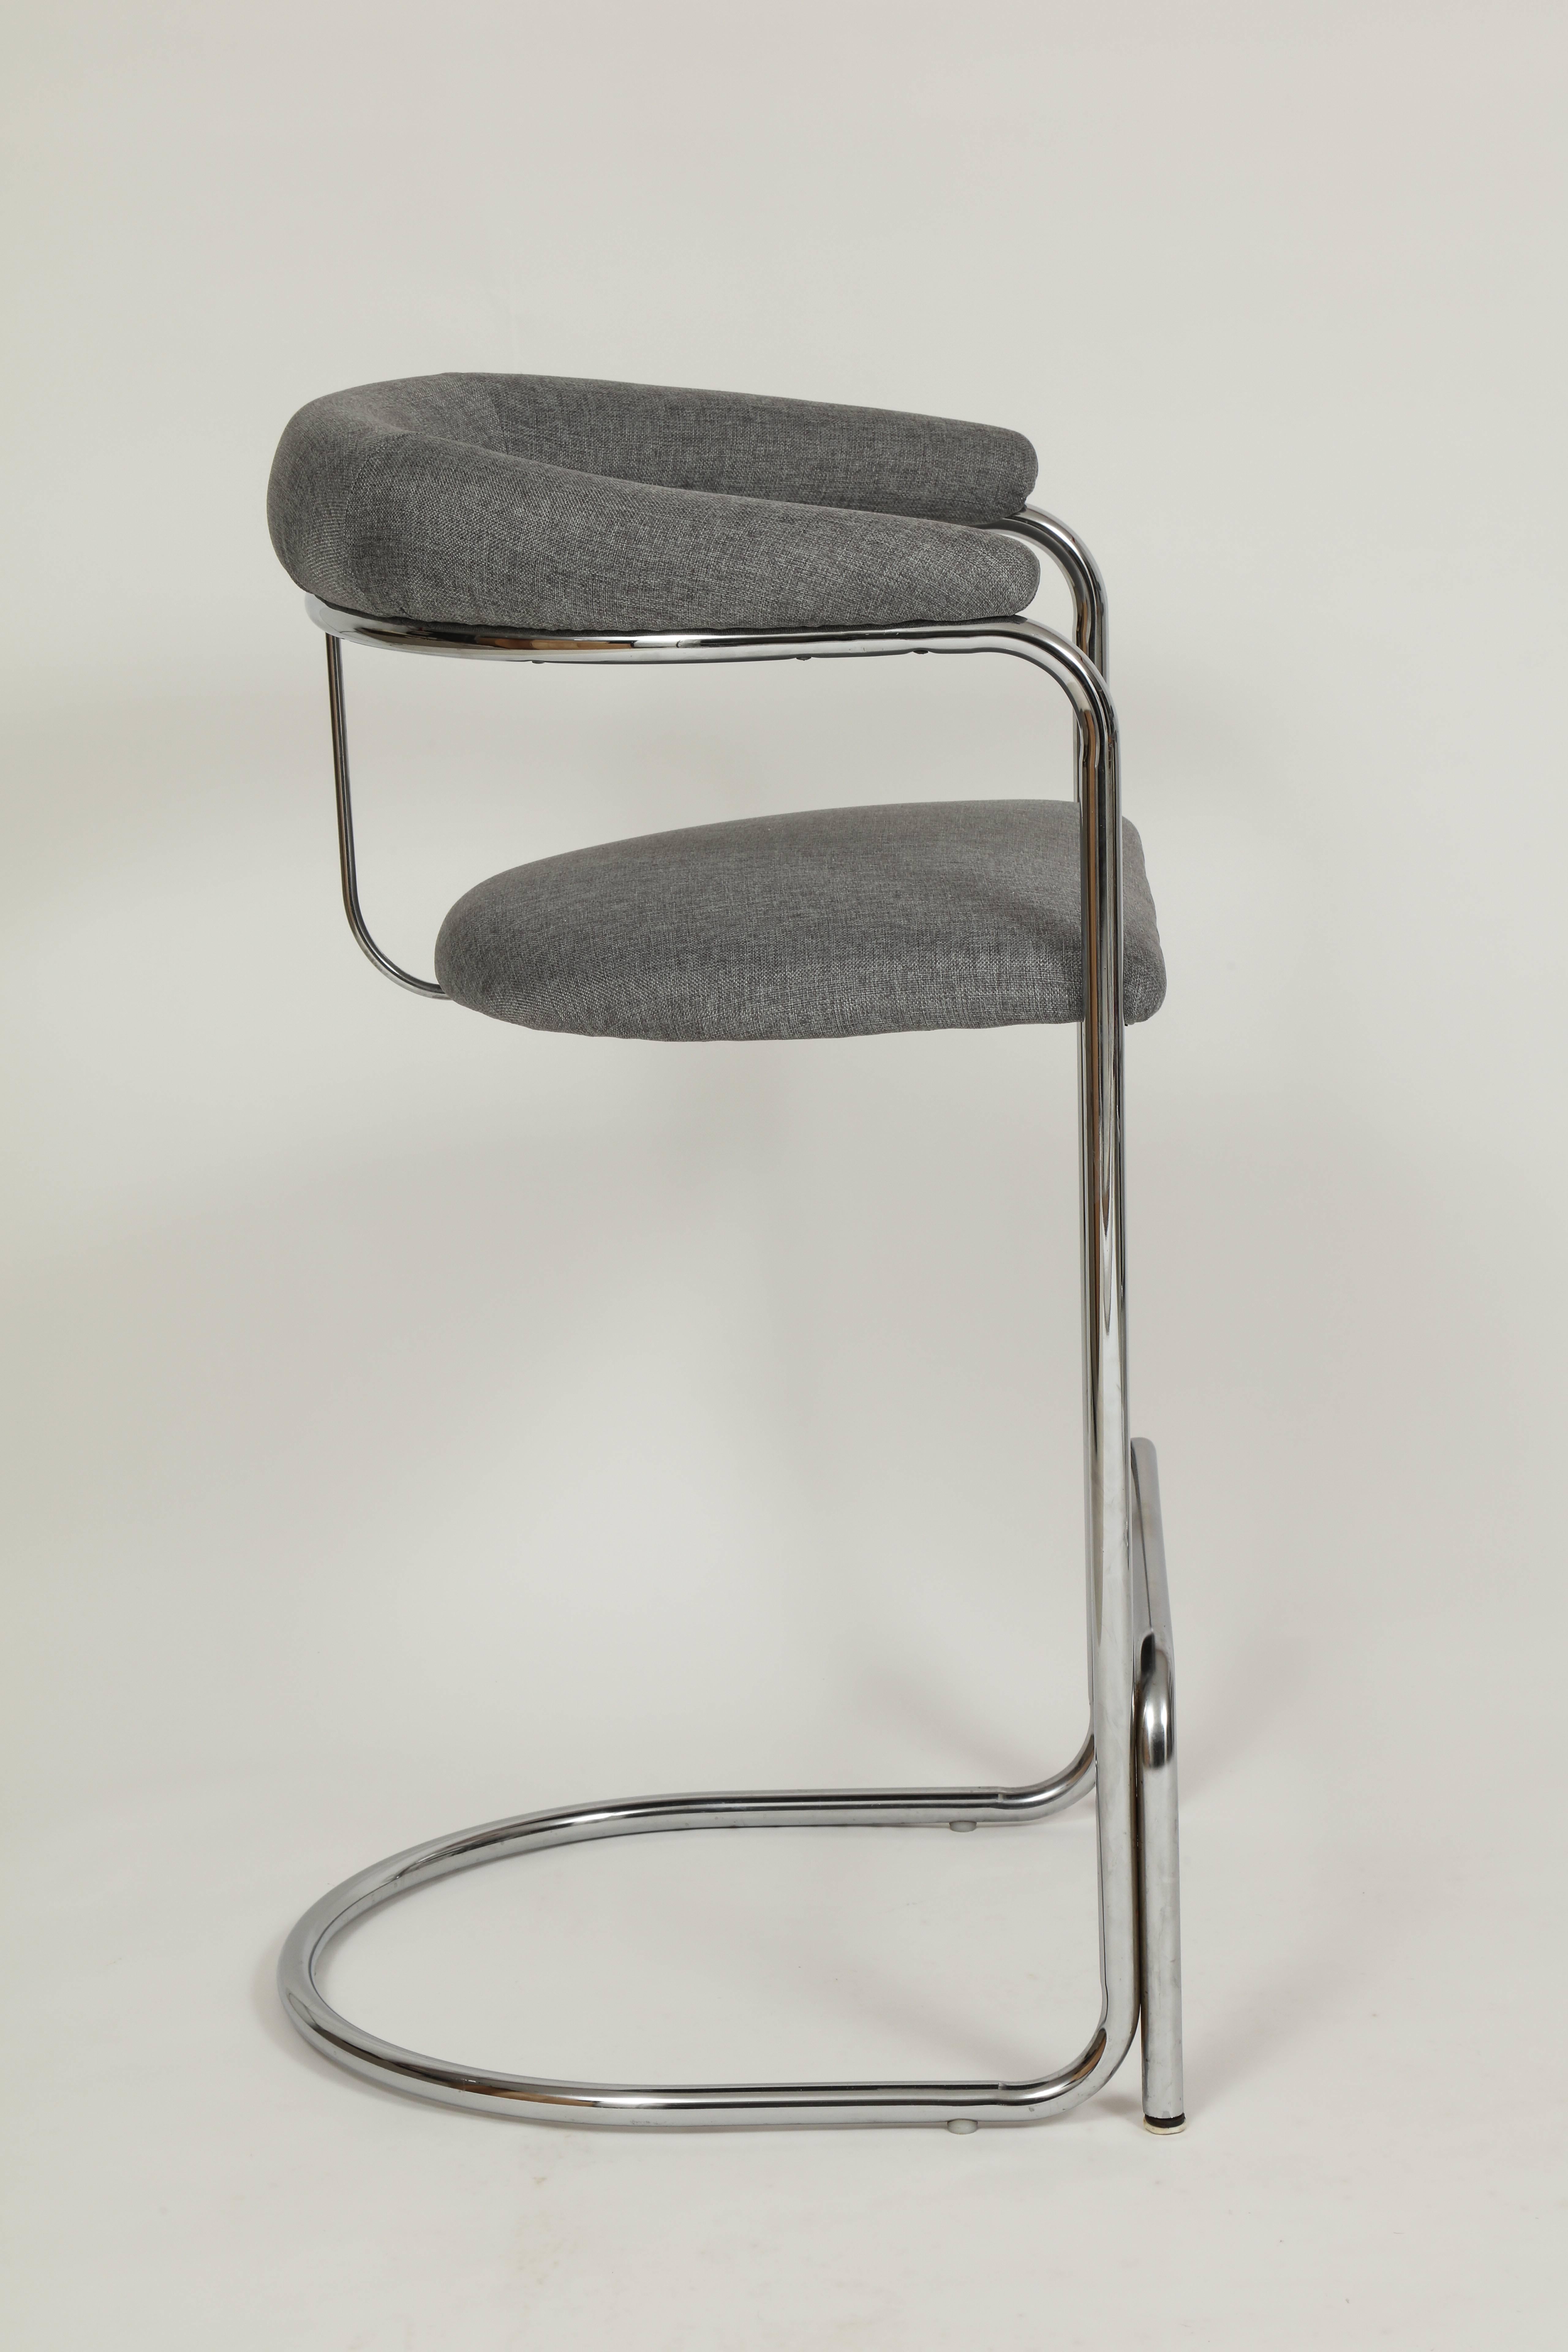 thonet stool vintage